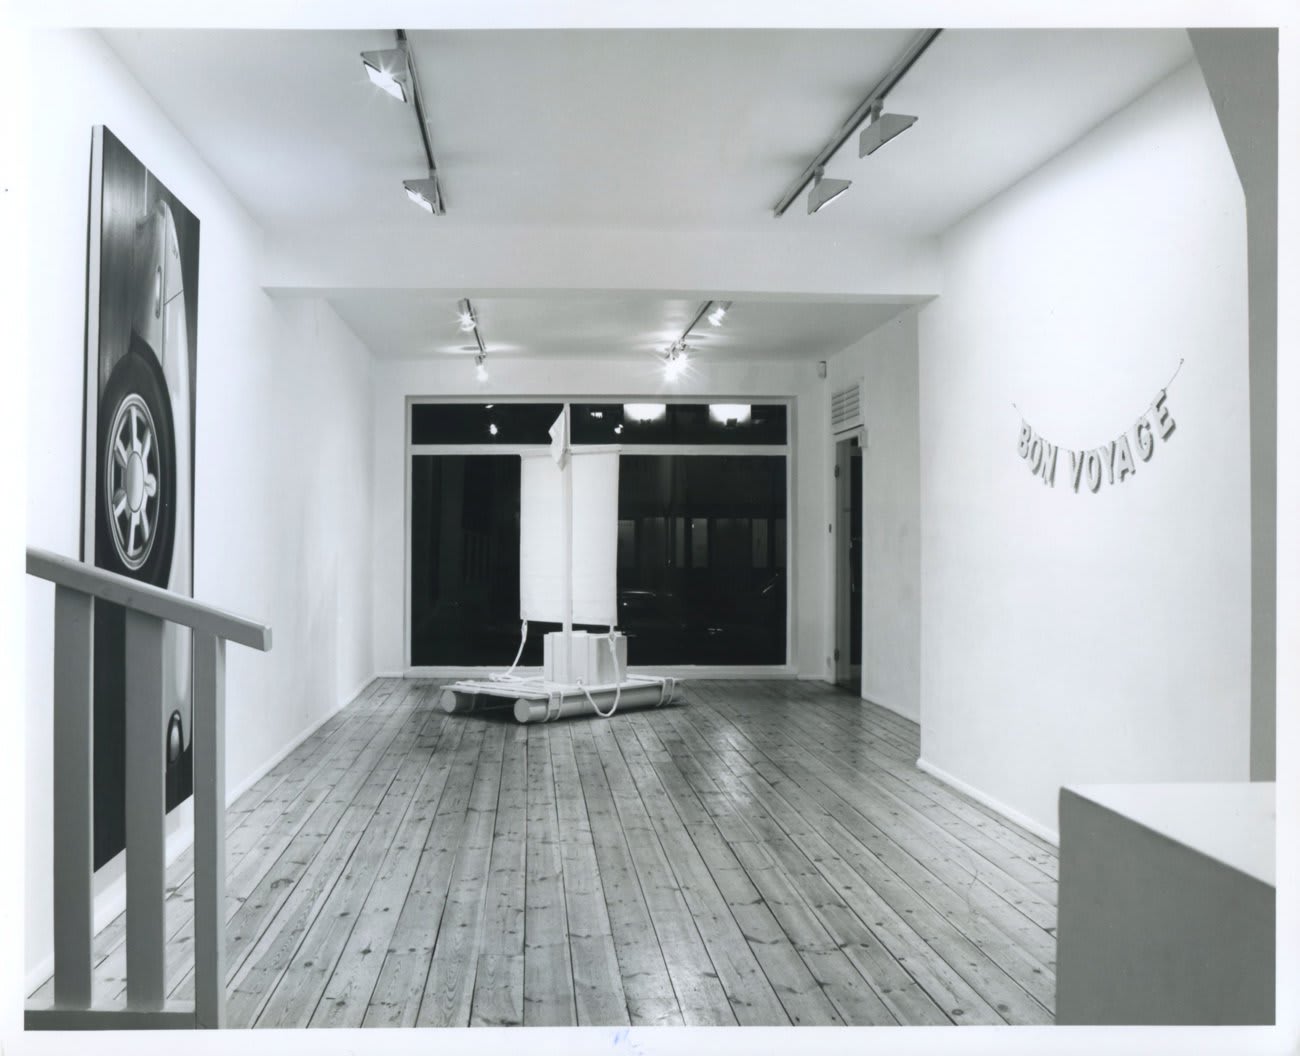 Installation view, Karsten Schubert, 1991